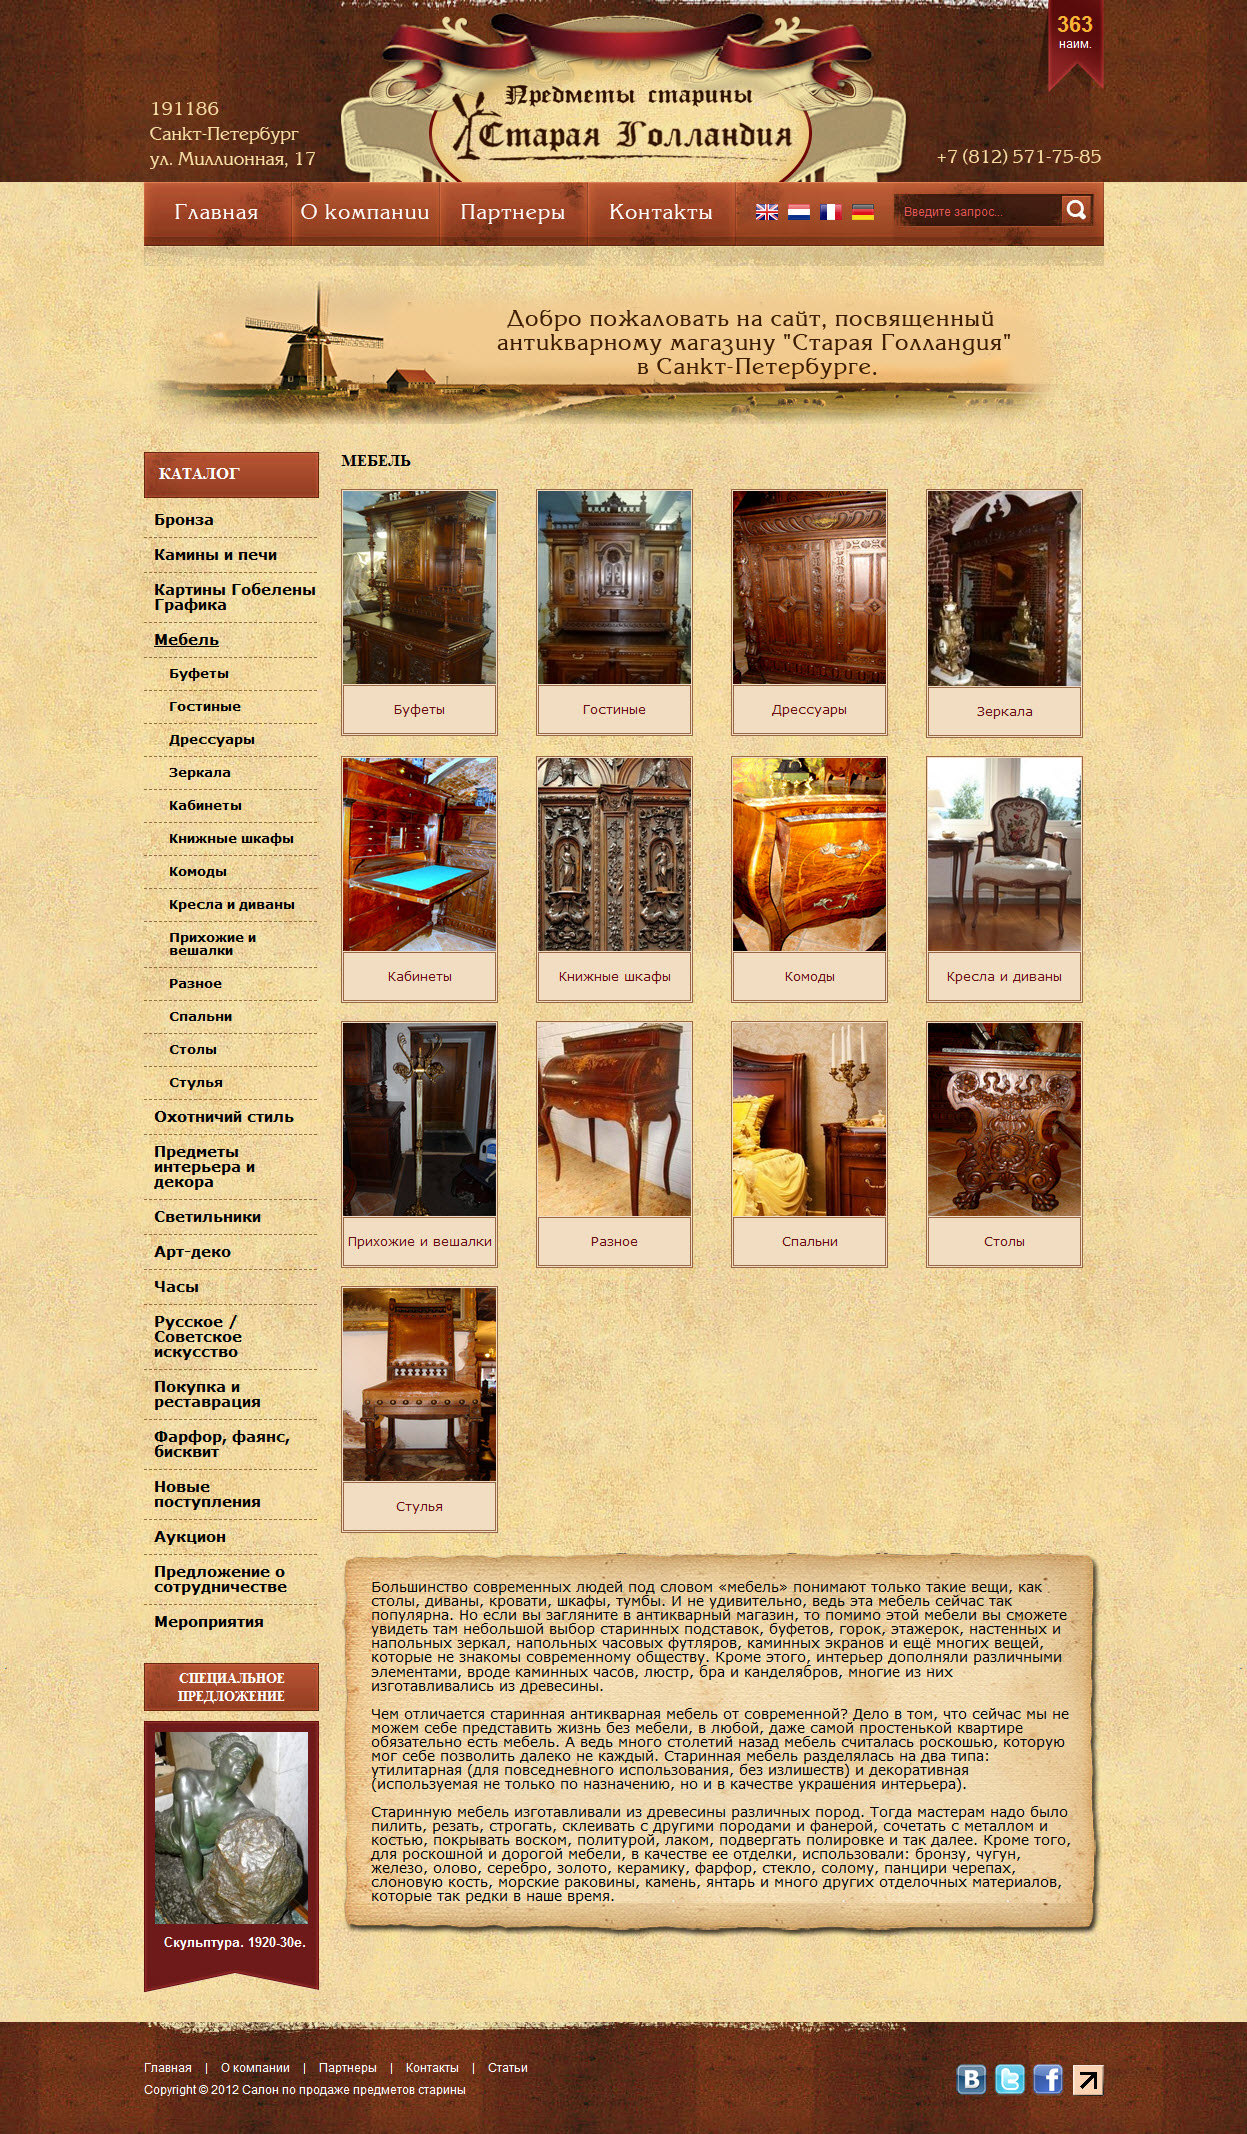 Сайт антикварного магазина "Старая Голландия"